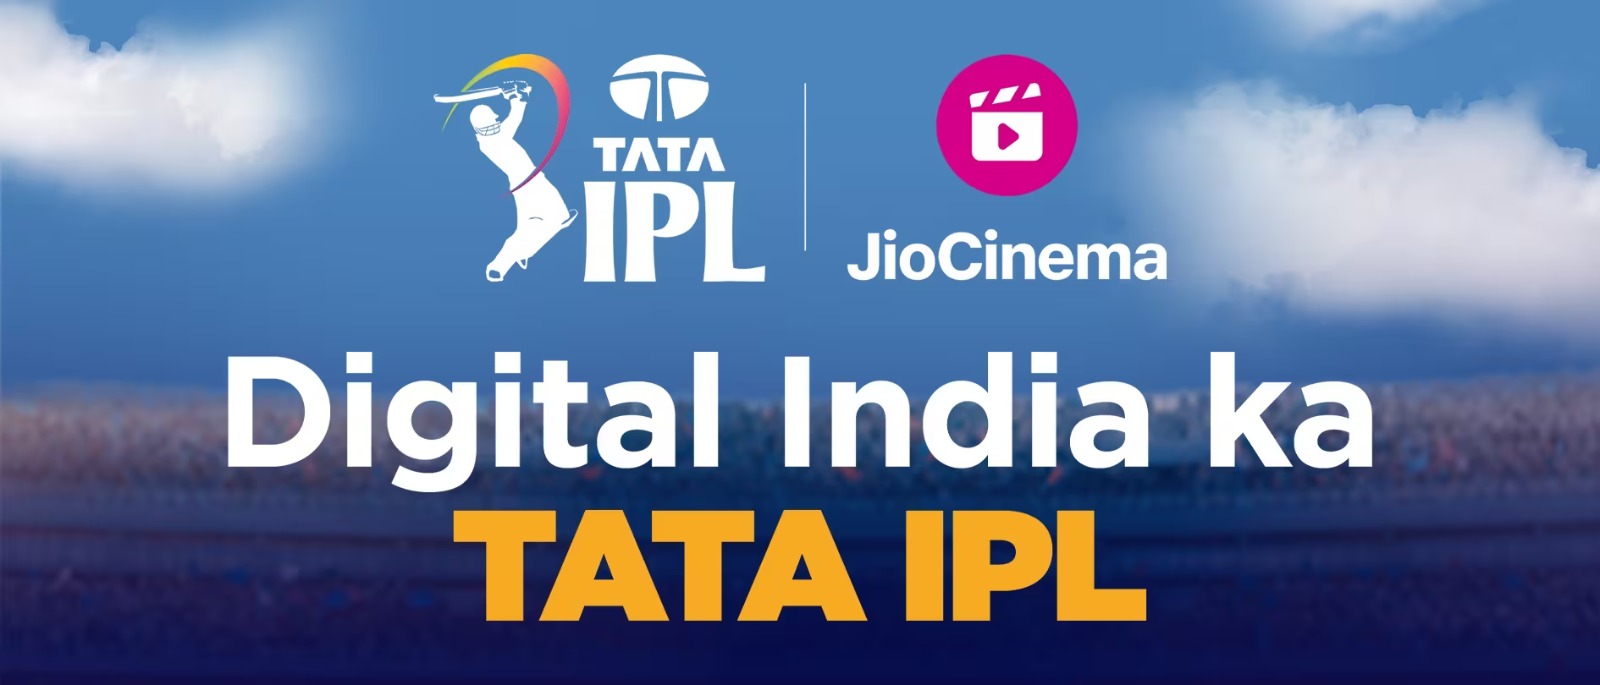 आईपीएल फैन पार्क’ में दिखेंगे लाइव मैच, जियो-सिनेमा करेगा डिजिटल स्ट्रीमिंग